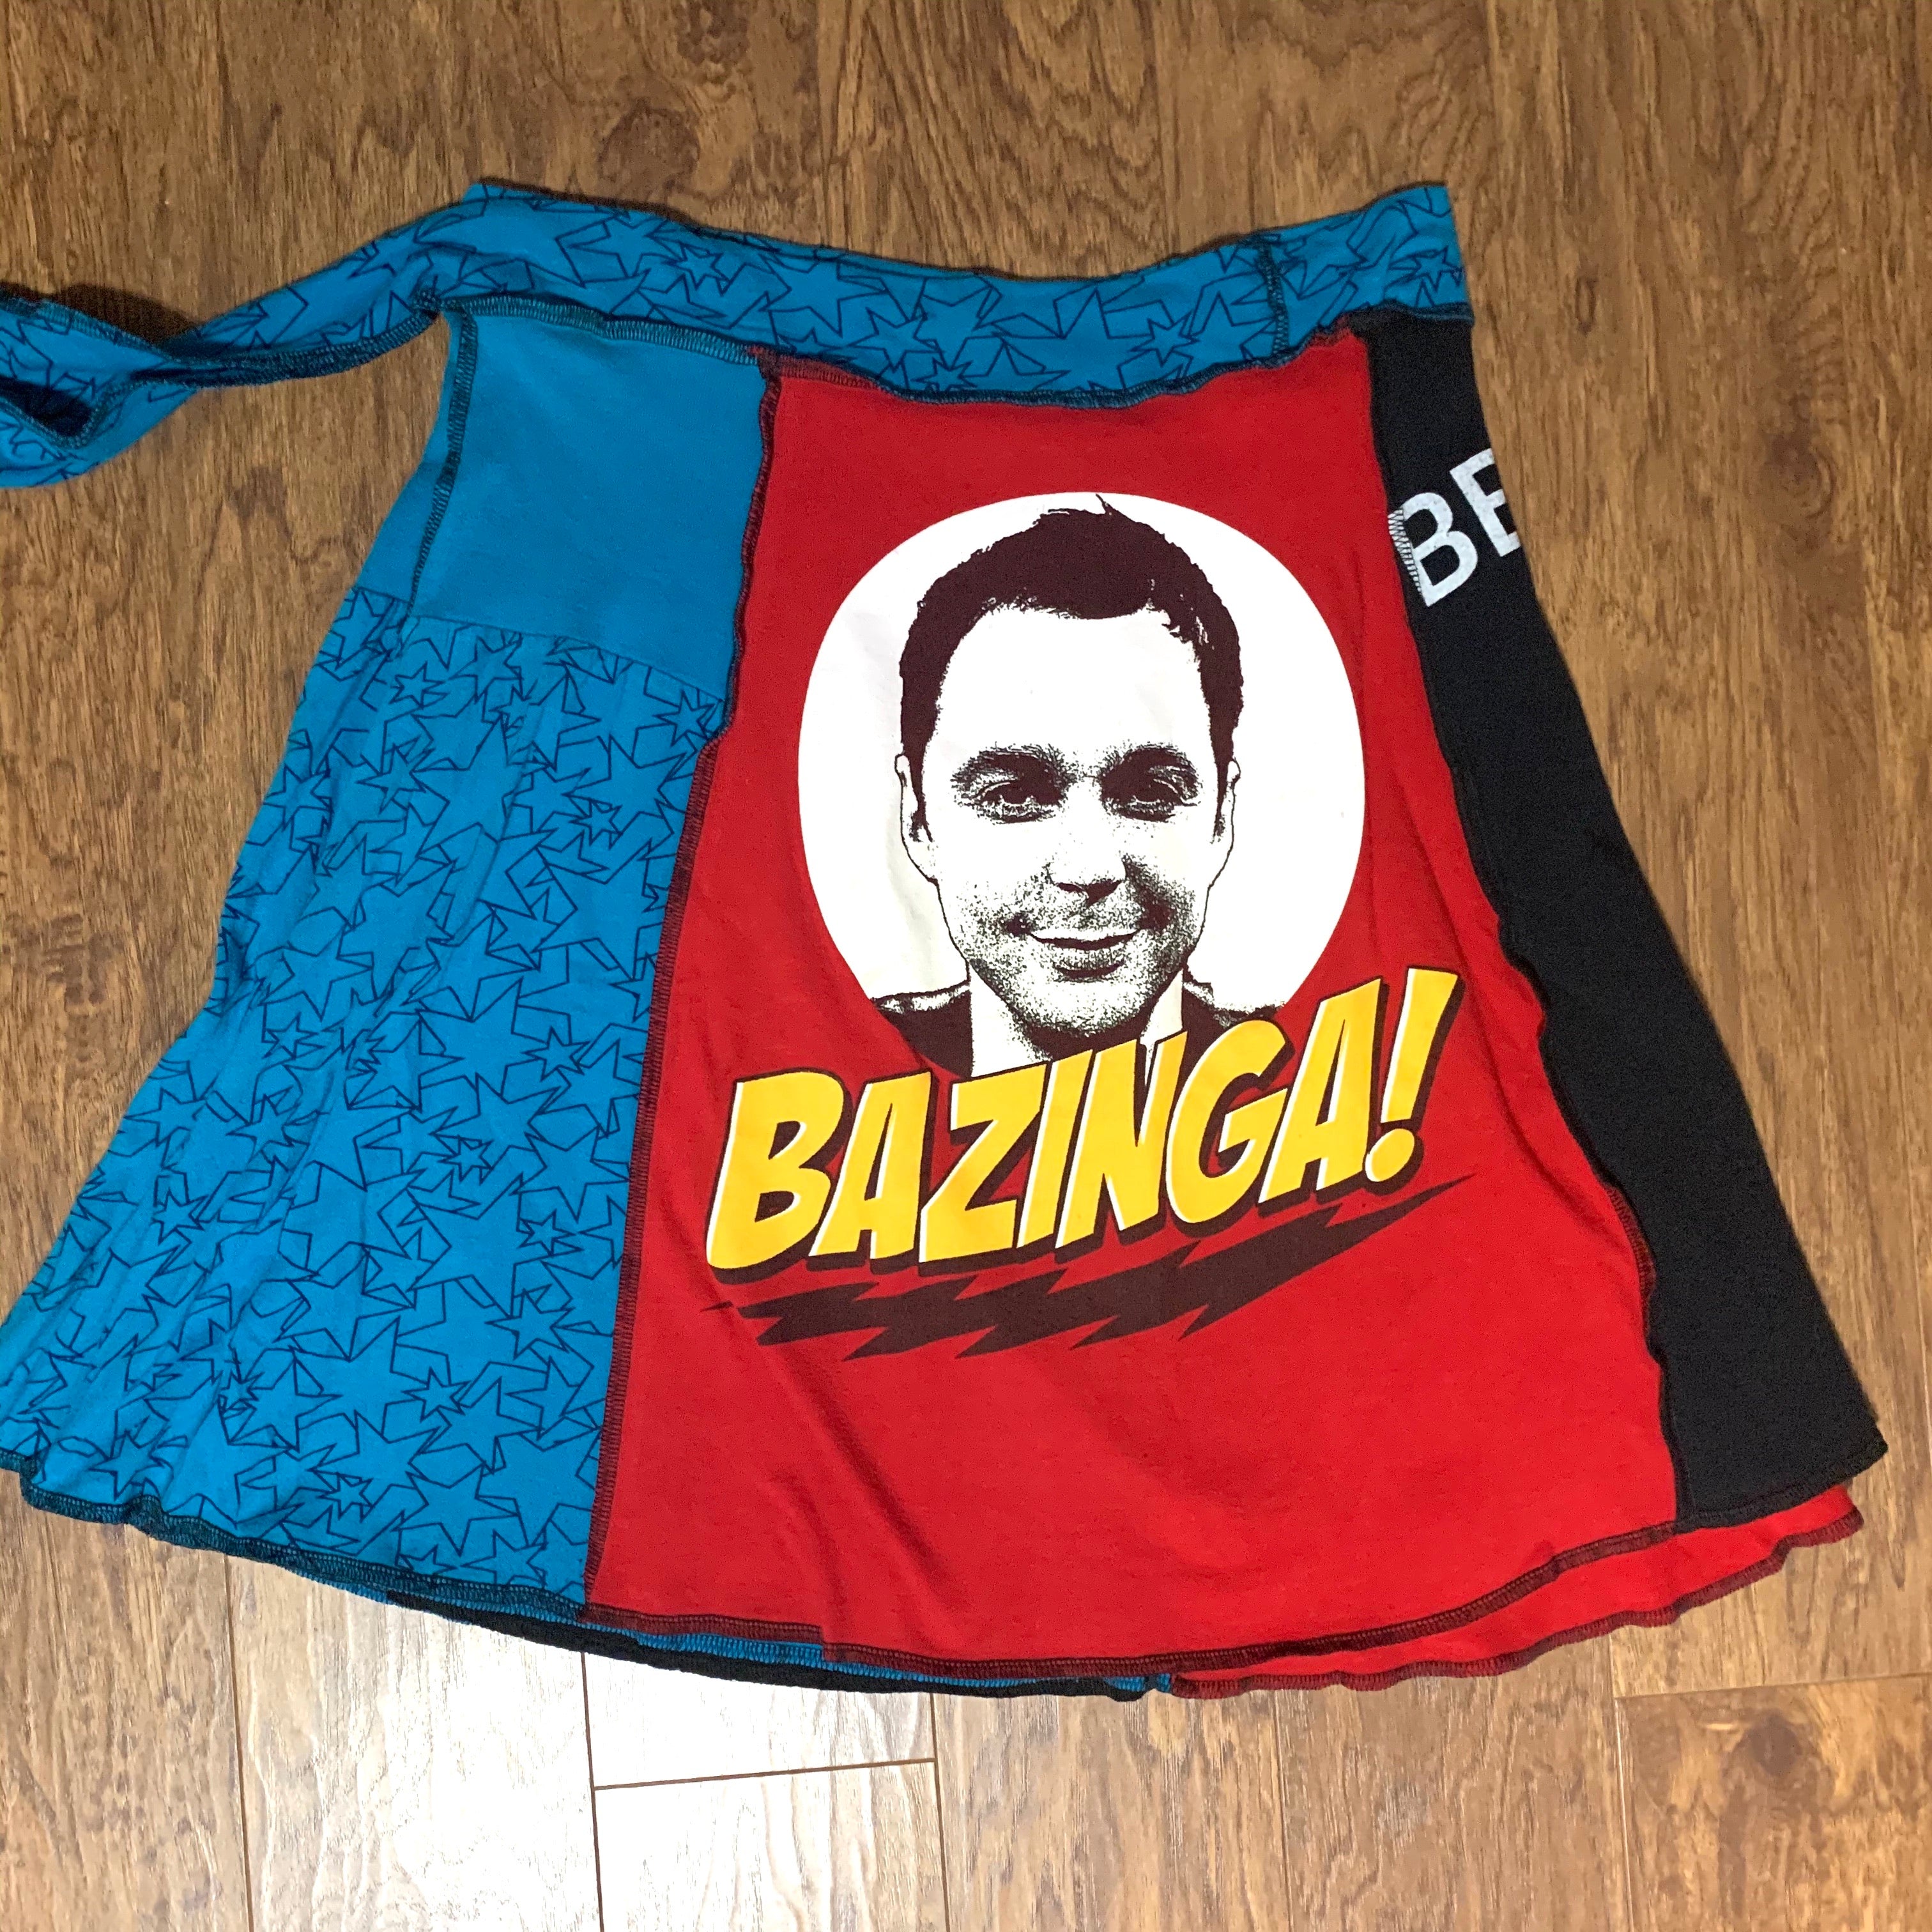 Bazinga! Upcycled T-shirt Wrap Skirt